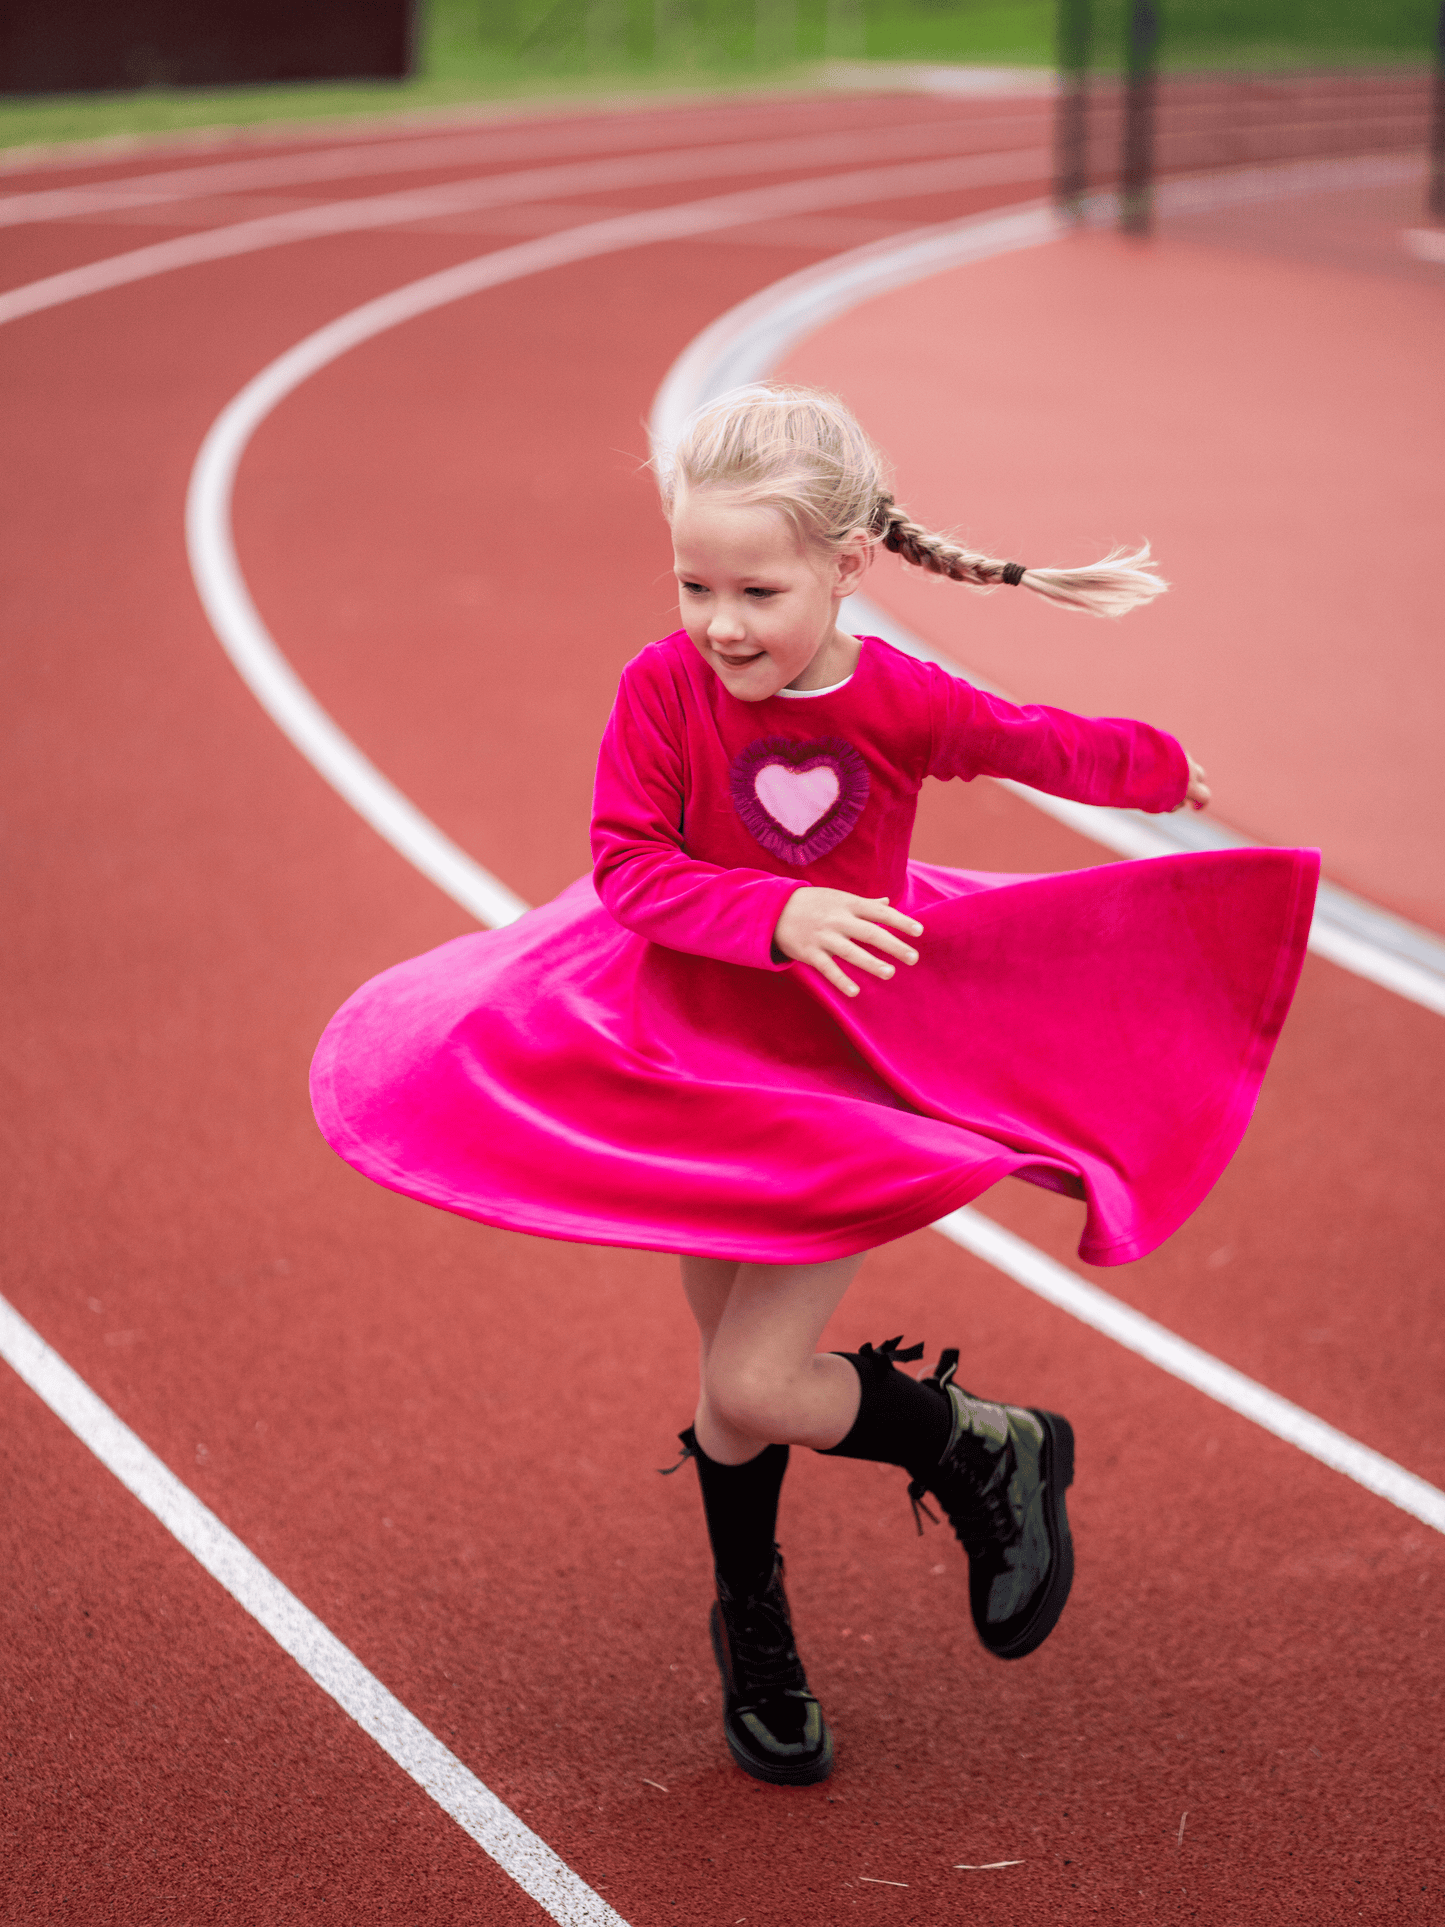 Vaikiška rožinė veliūrinė suknelė "Širdelė"